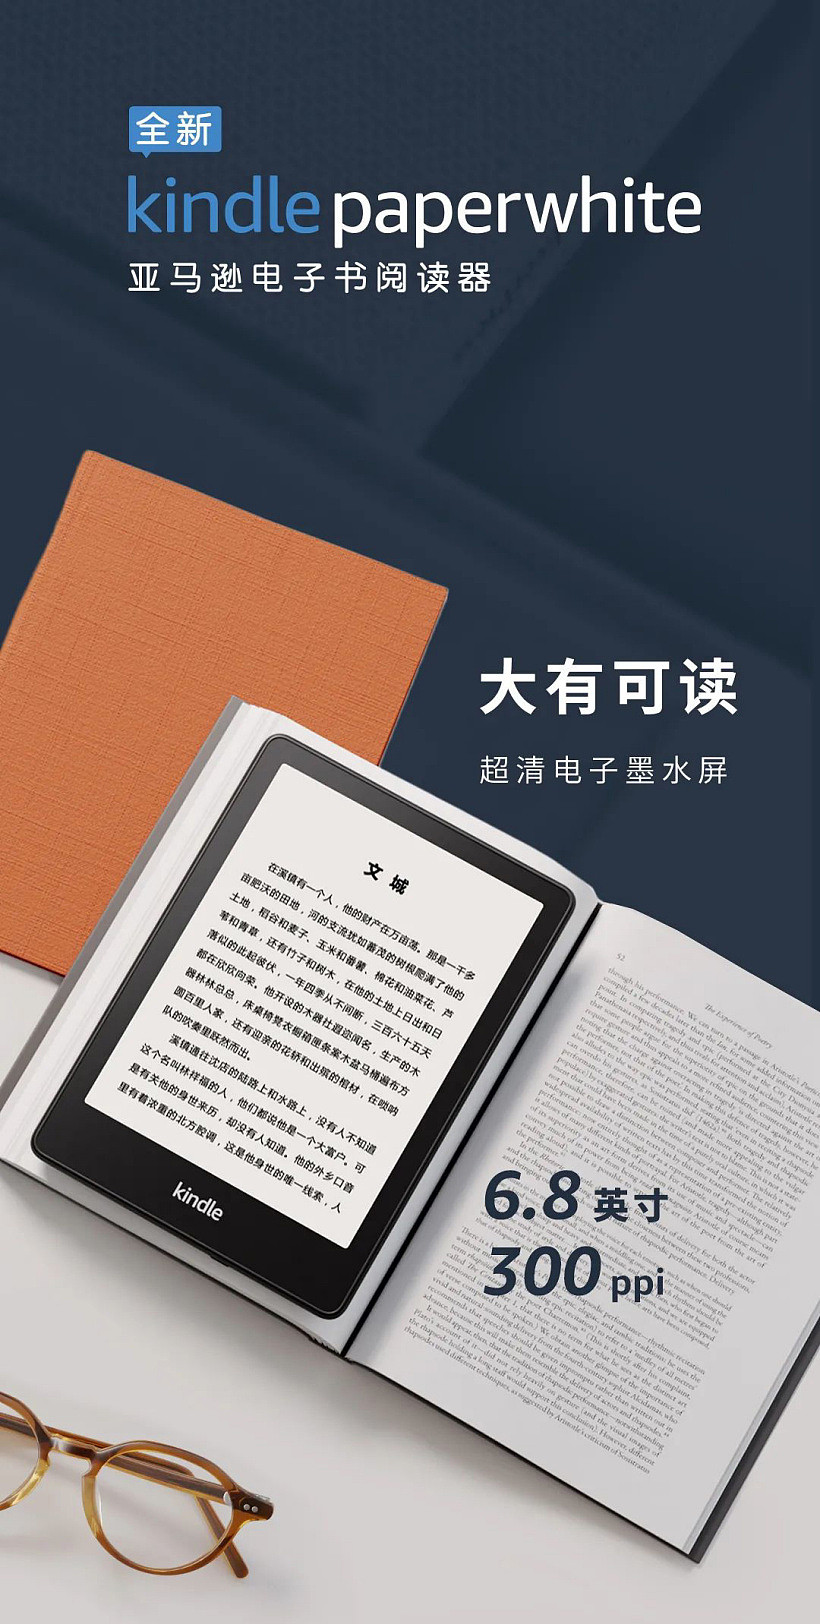 亚马逊全新 Kindle Paperwhite 发布：搭载 6.8 英寸 300ppi 超清电子墨水屏，可调节冷暖光，USB-C 接口，IPX8 级防水 - 1